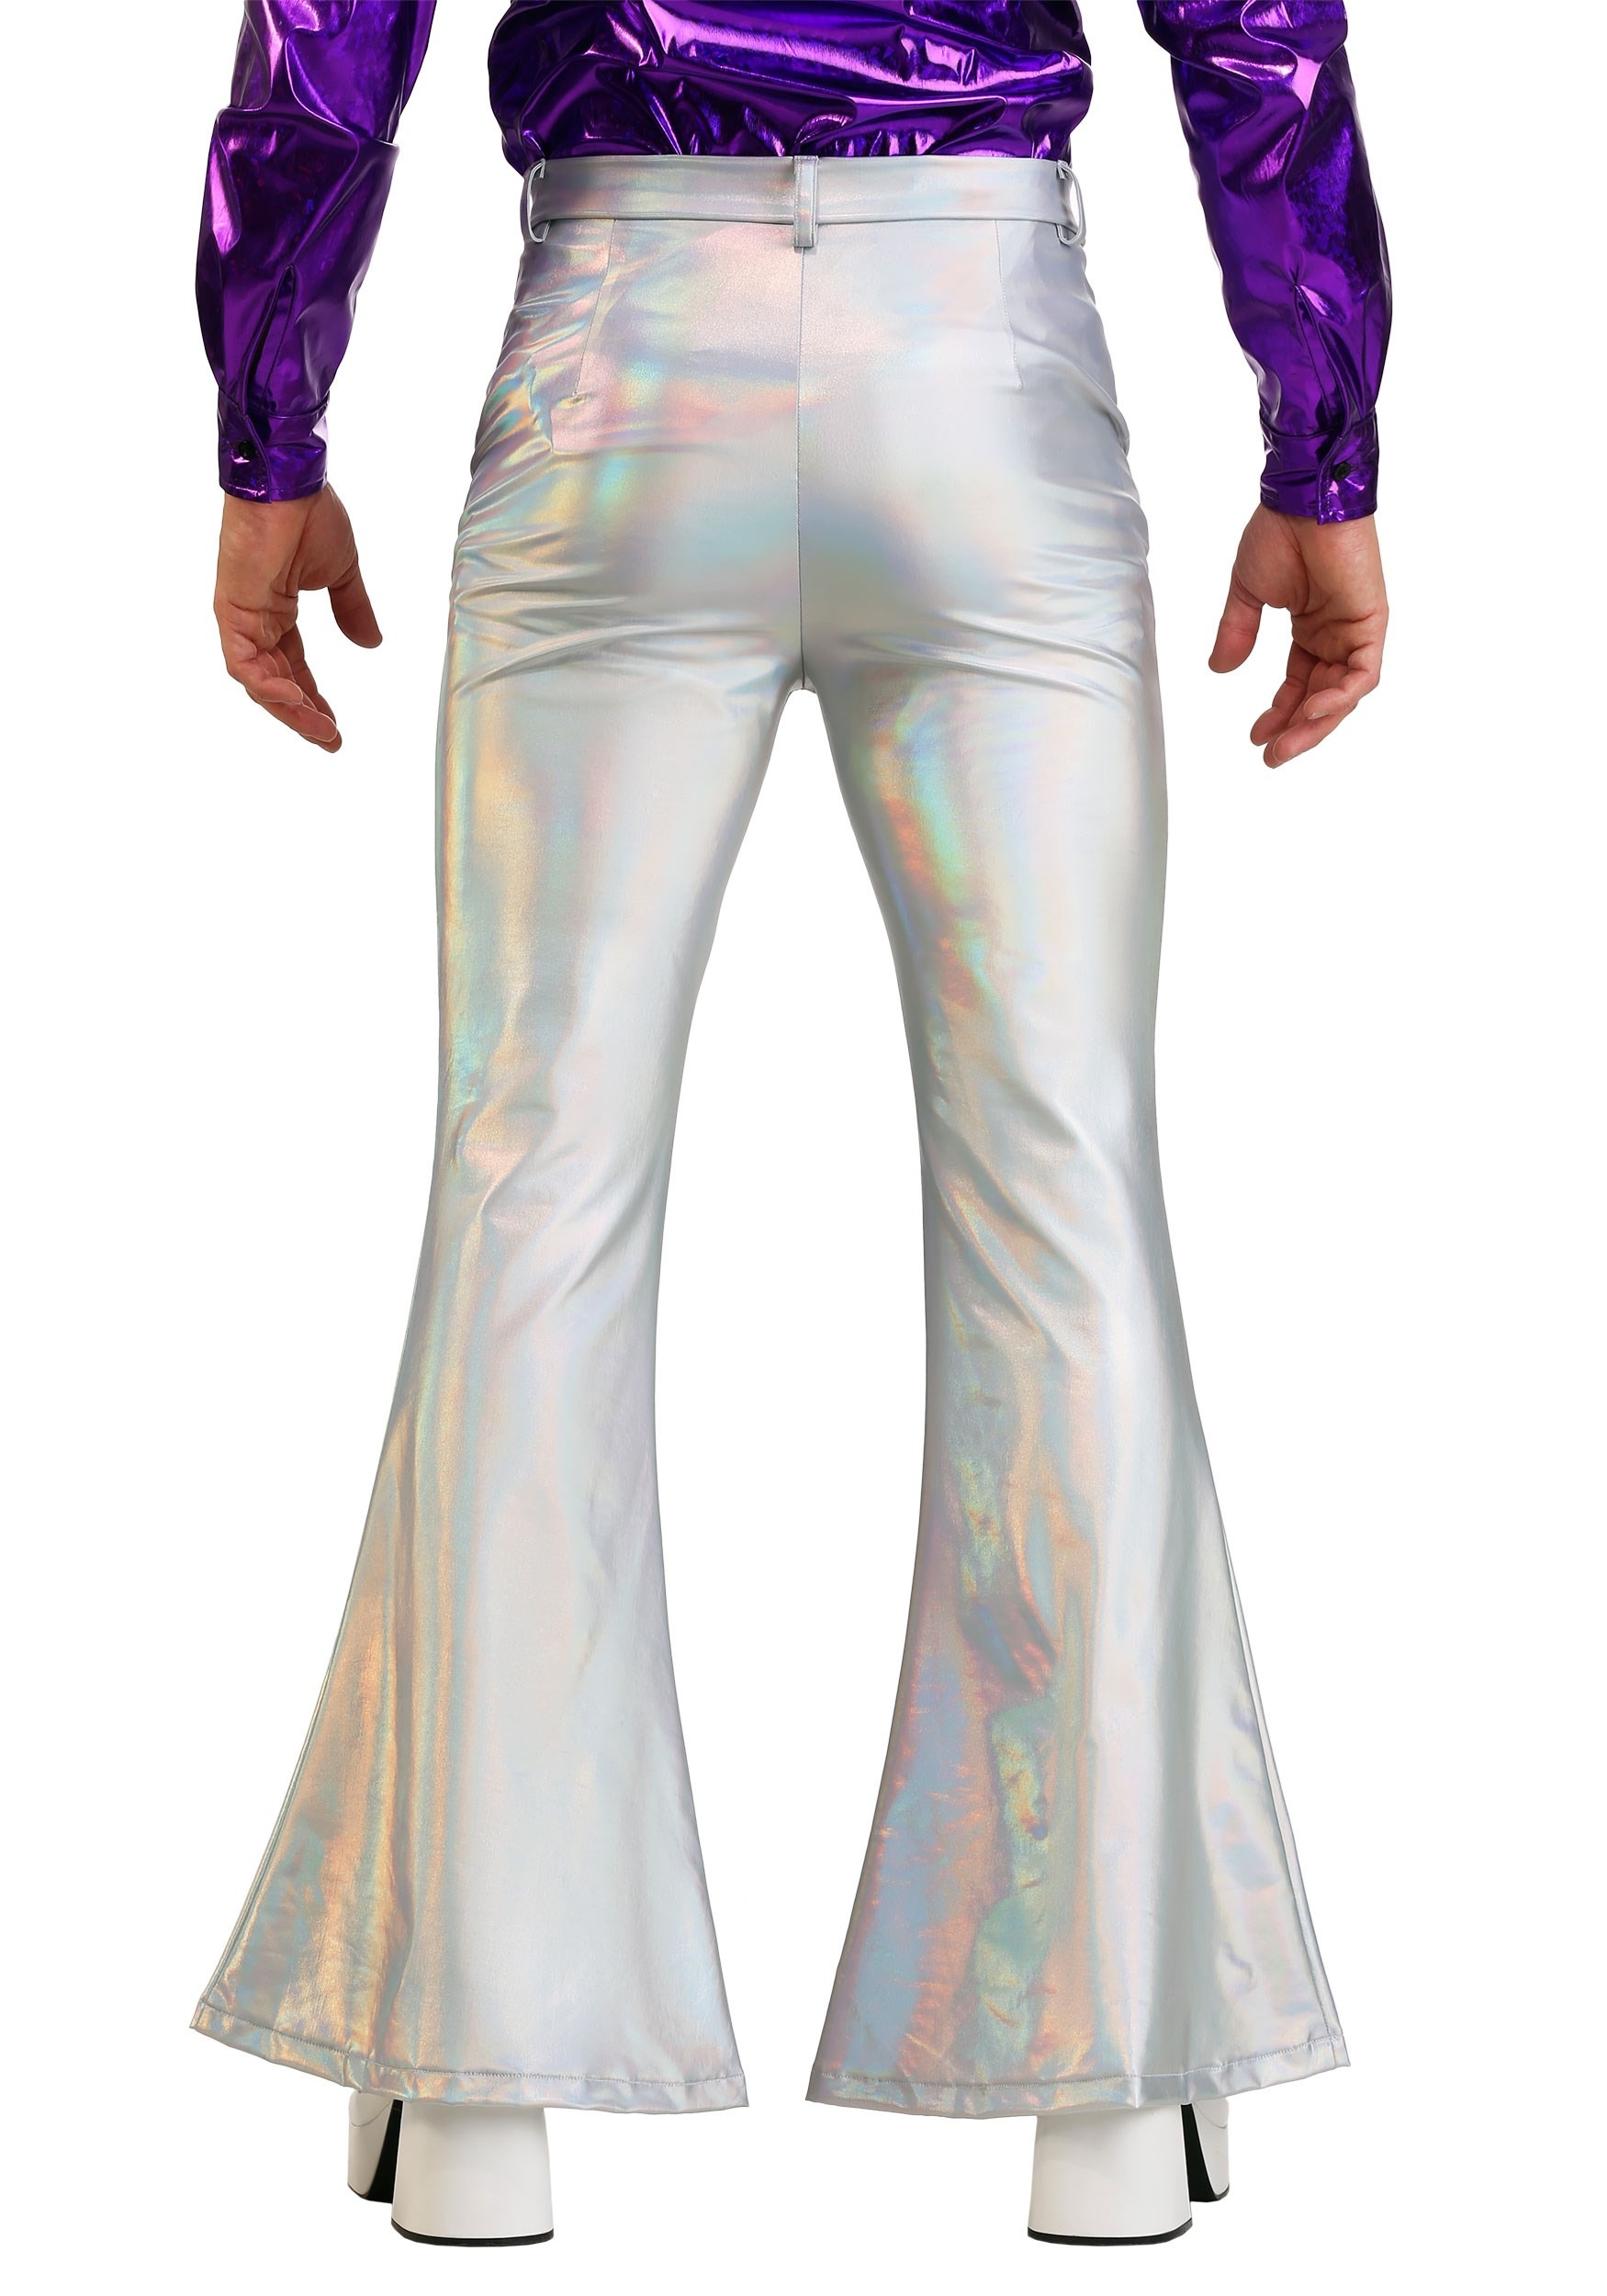 Plus Size Men's Holographic Disco Pants